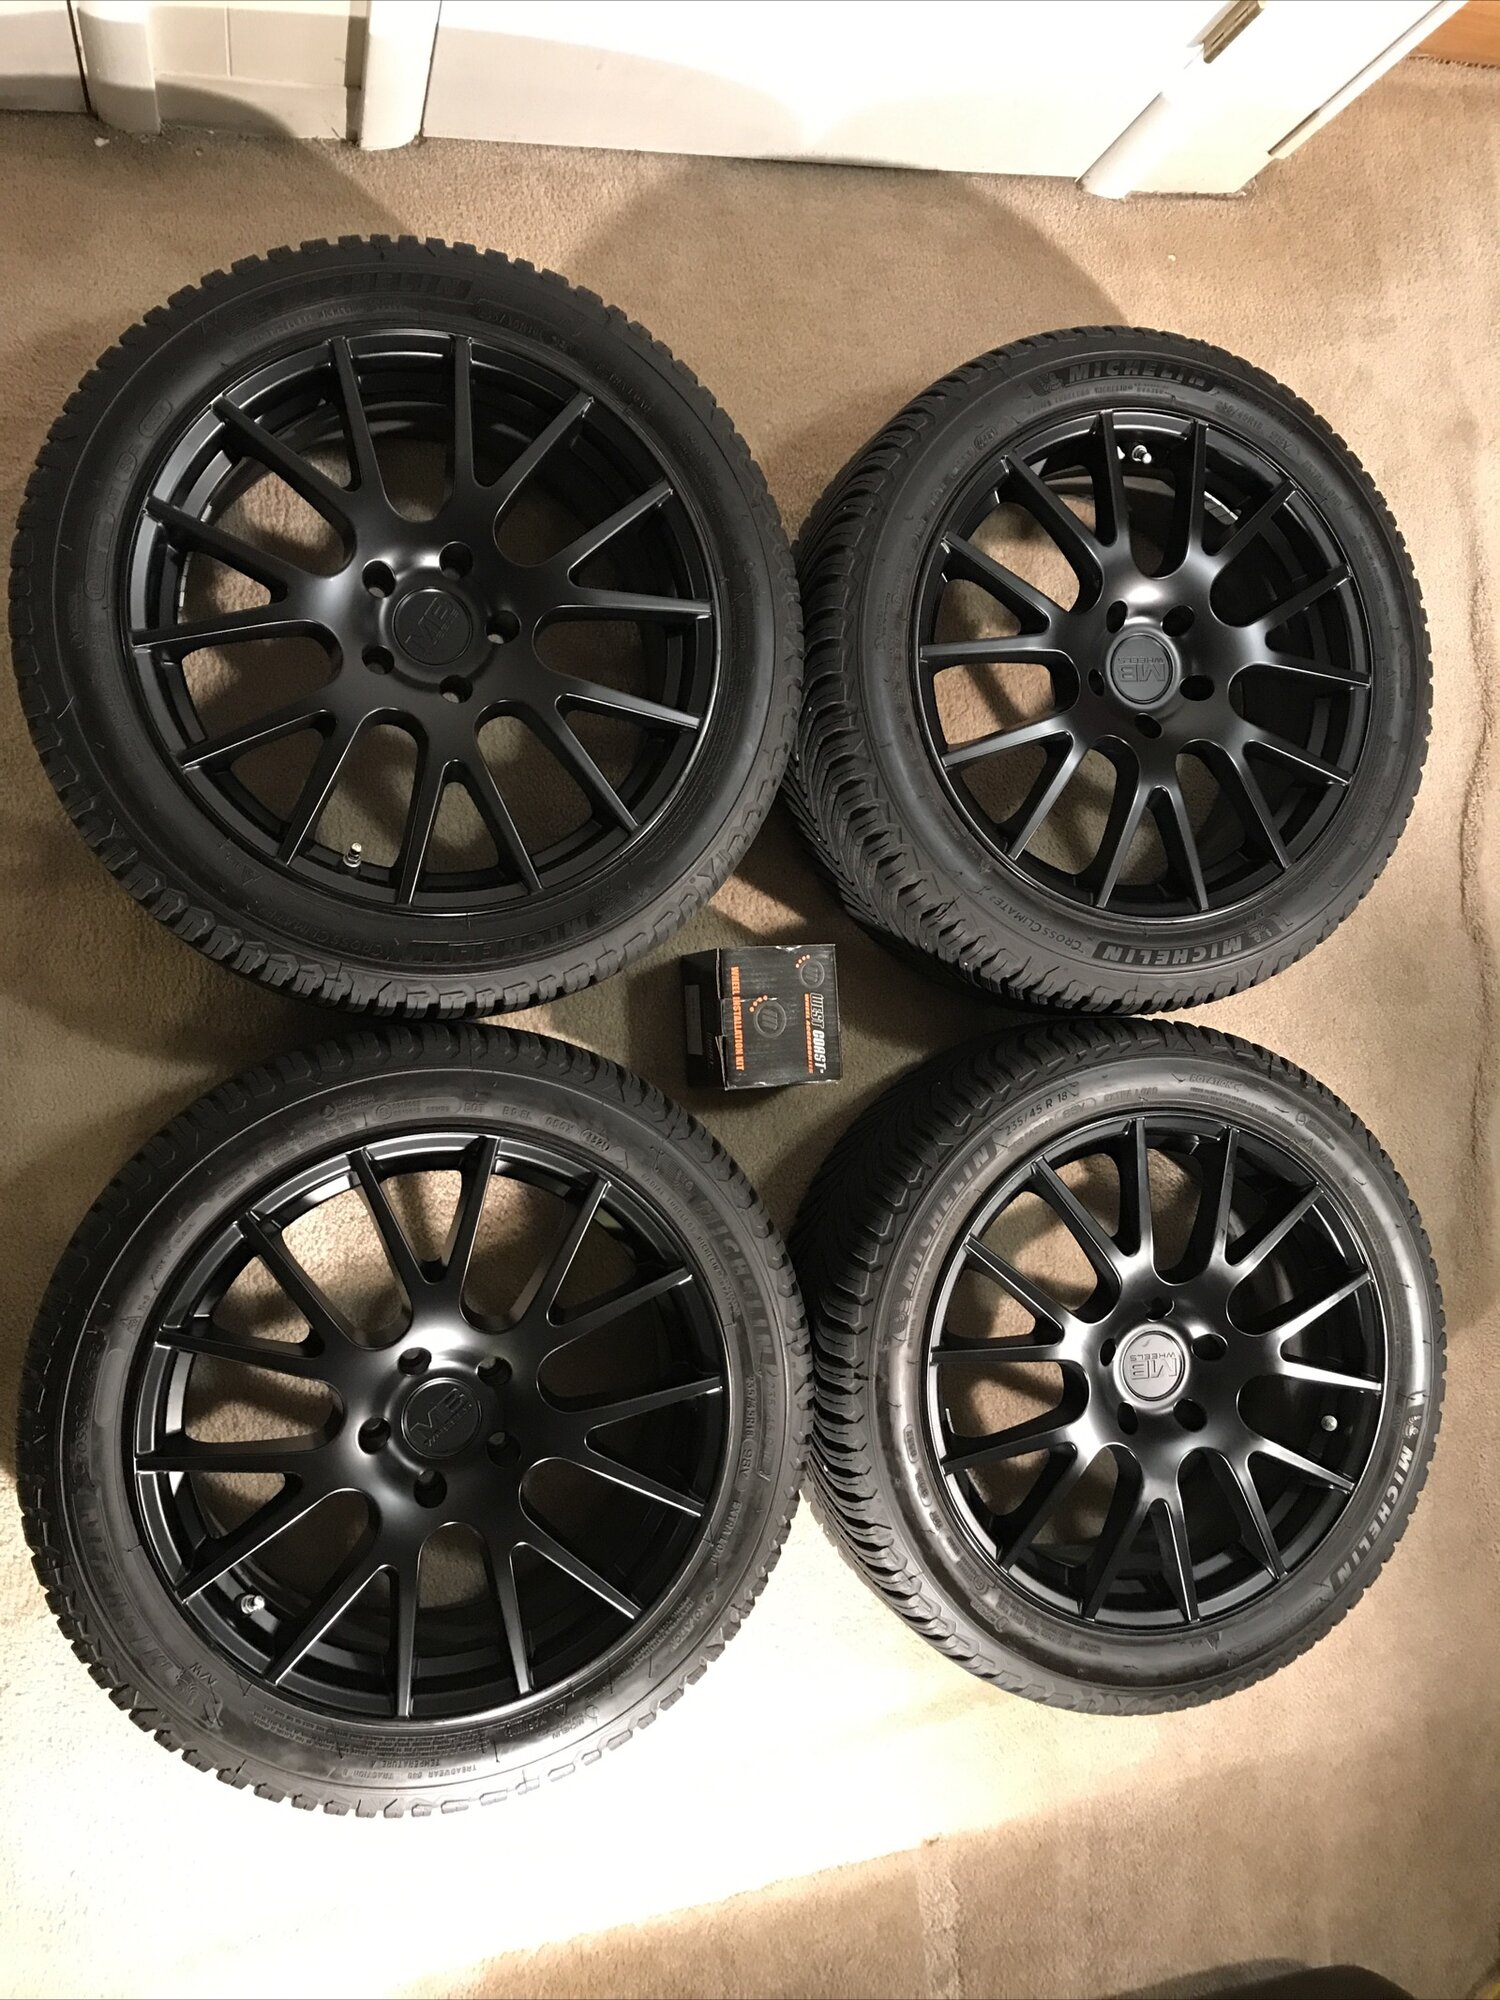 Sold - [Colorado] Model 3 winter tire package: Michelin CrossClimate 2, 18" MB  Wheels Crux wheels, & TPMS sensors | Tesla Motors Club